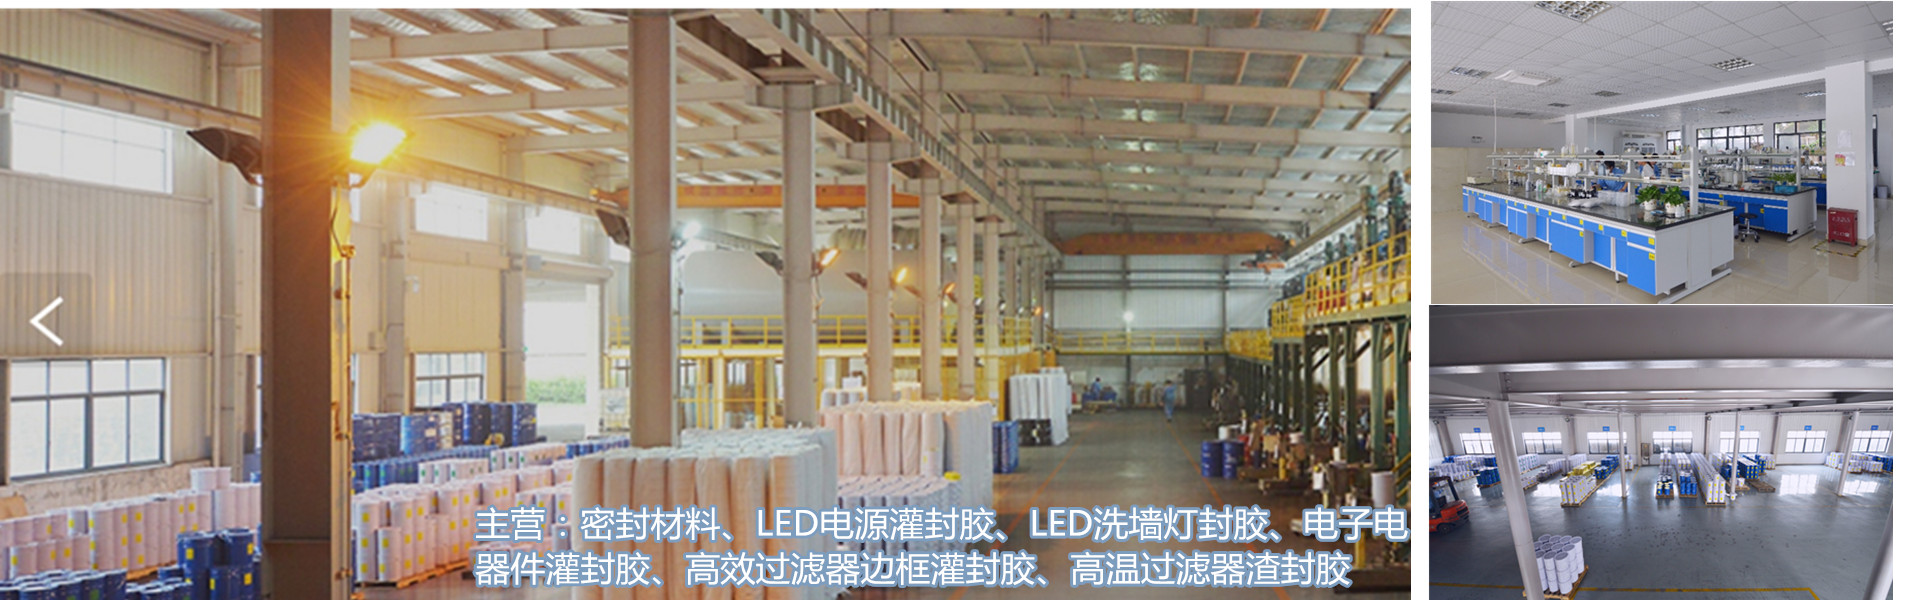 elektroninen valumeliima, pu-tiivisteet, suodatintiiviste,Dongguan fuming sealing material Co., Ltd